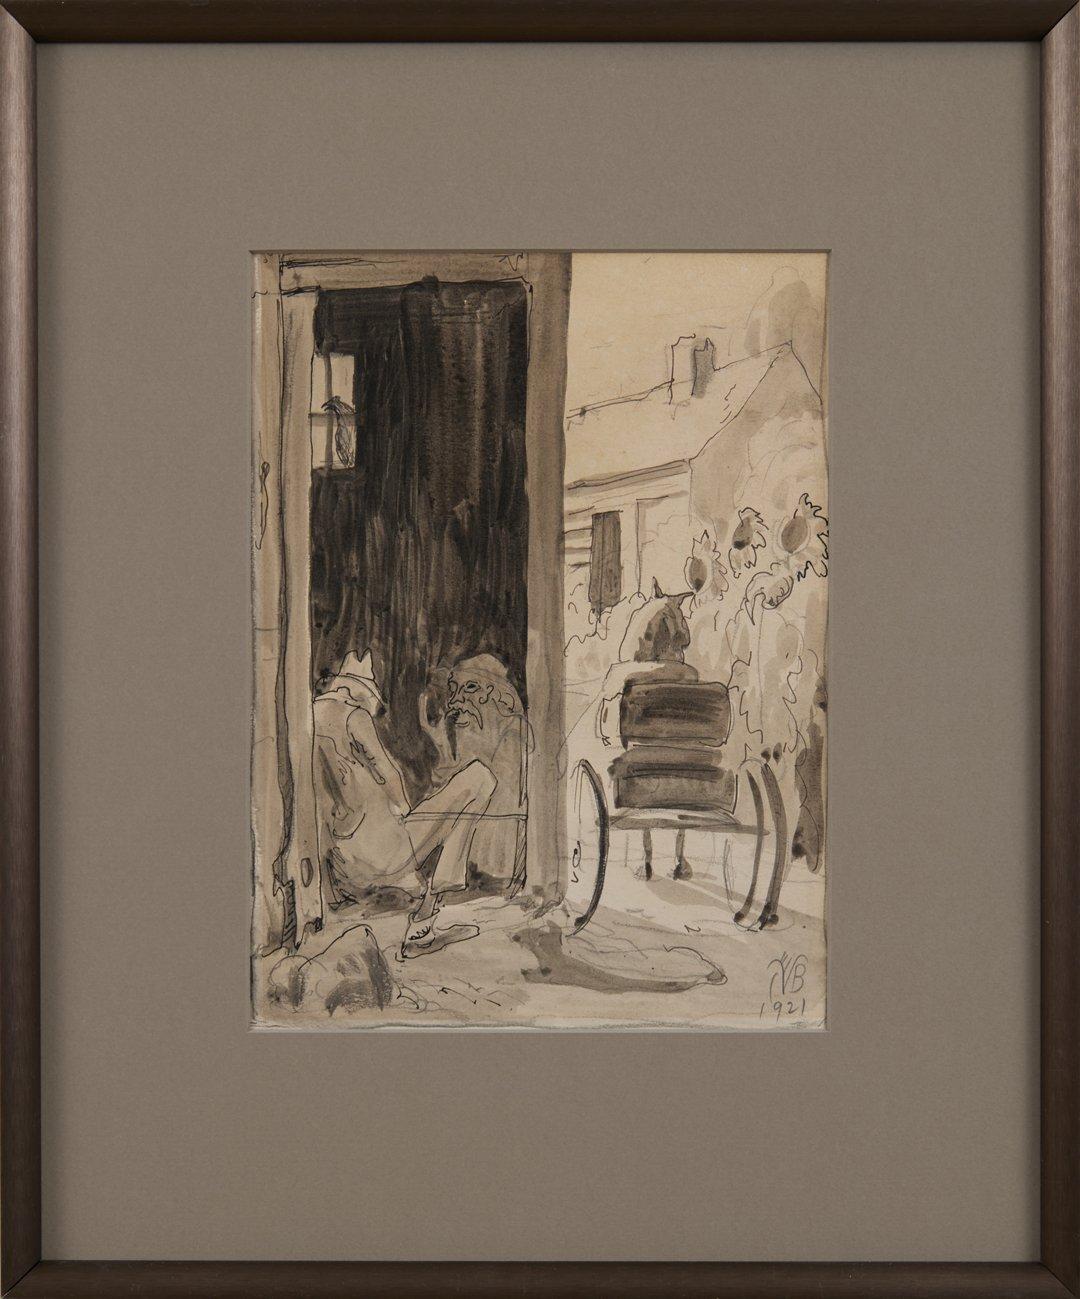 Village Scene, Zeichnung auf Papier des frühen 20. Jahrhunderts, Künstler der Cleveland School – Art von Charles E. Burchfield